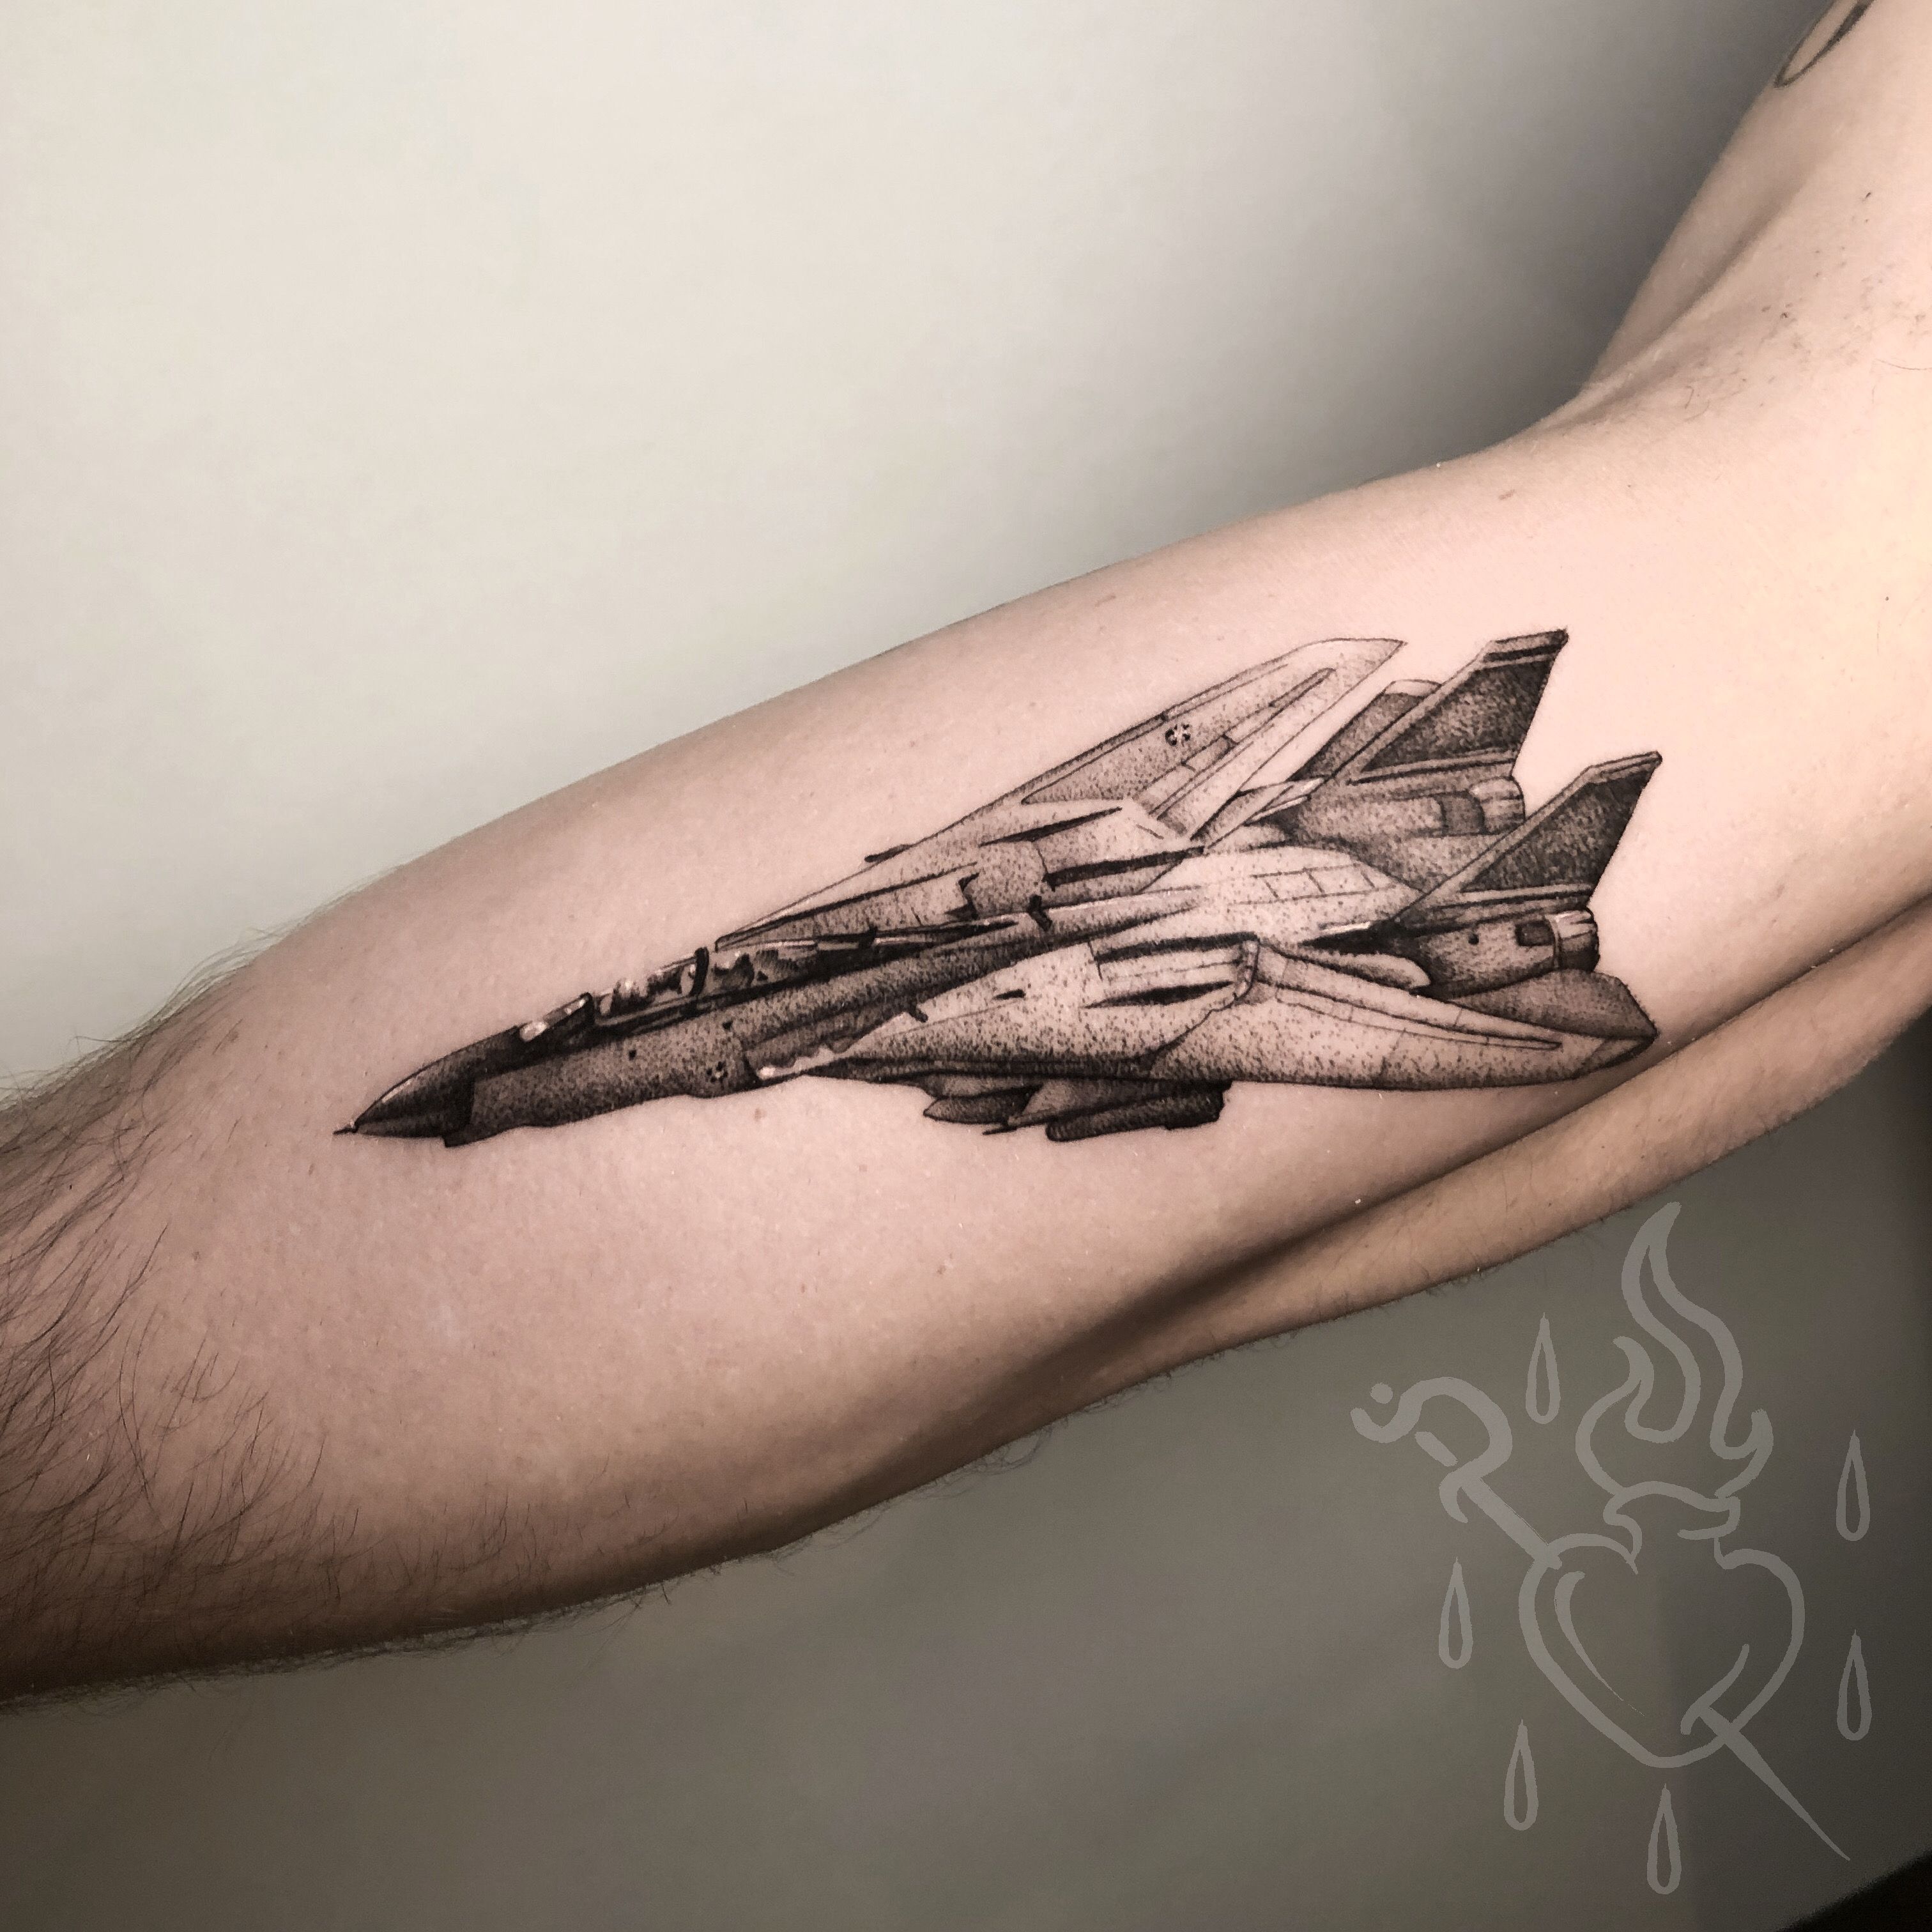 fighter jet tattoo